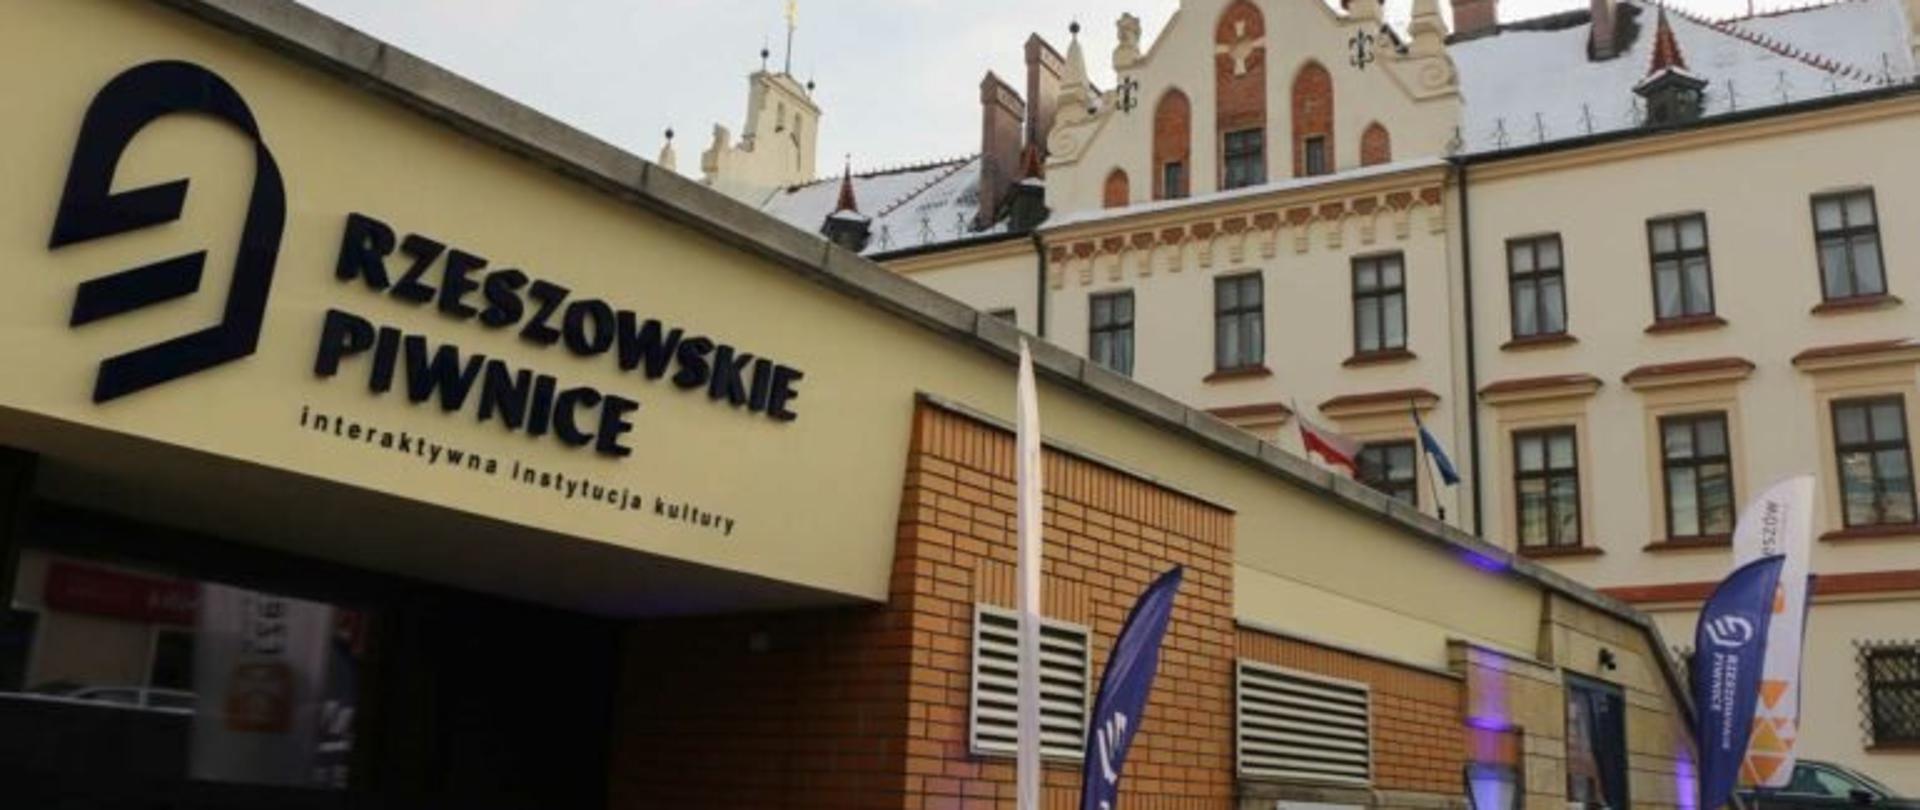 Fragment budynku z napisem Rzeszowskie Piwnice - interaktywna instytucja kultury